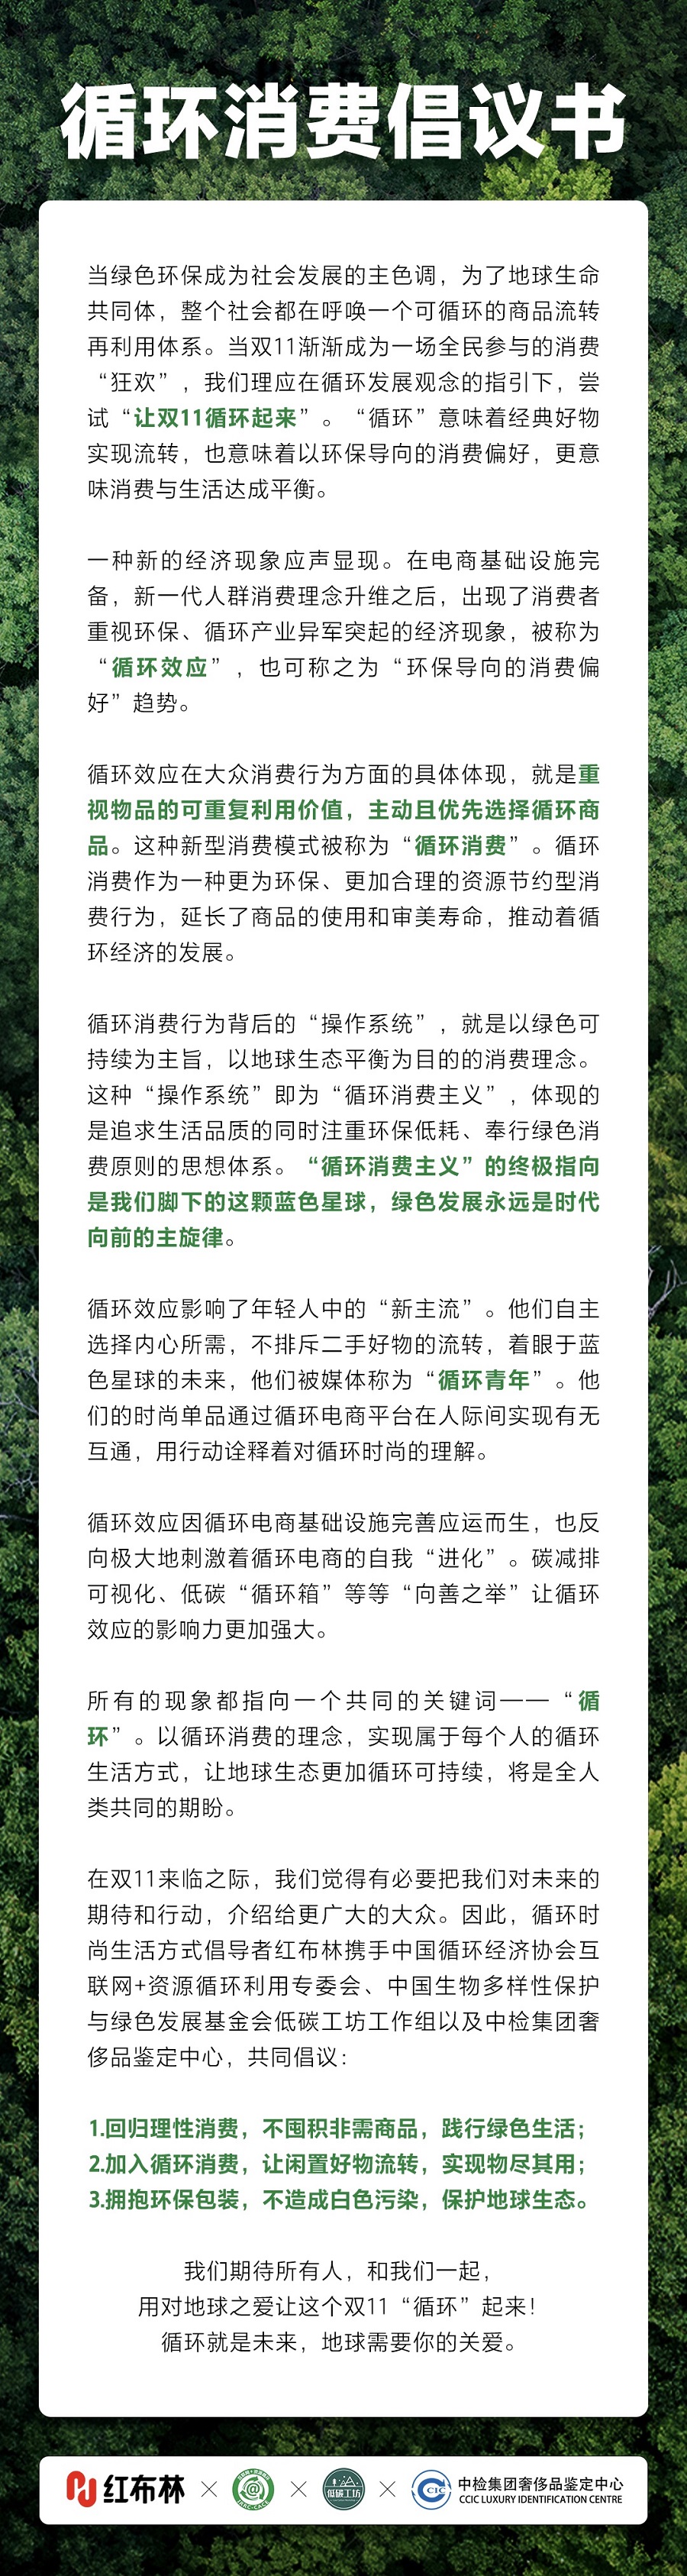 让双11循环起来！中国绿发会低碳工坊联合发布“双11”循环消费倡议·.jpg